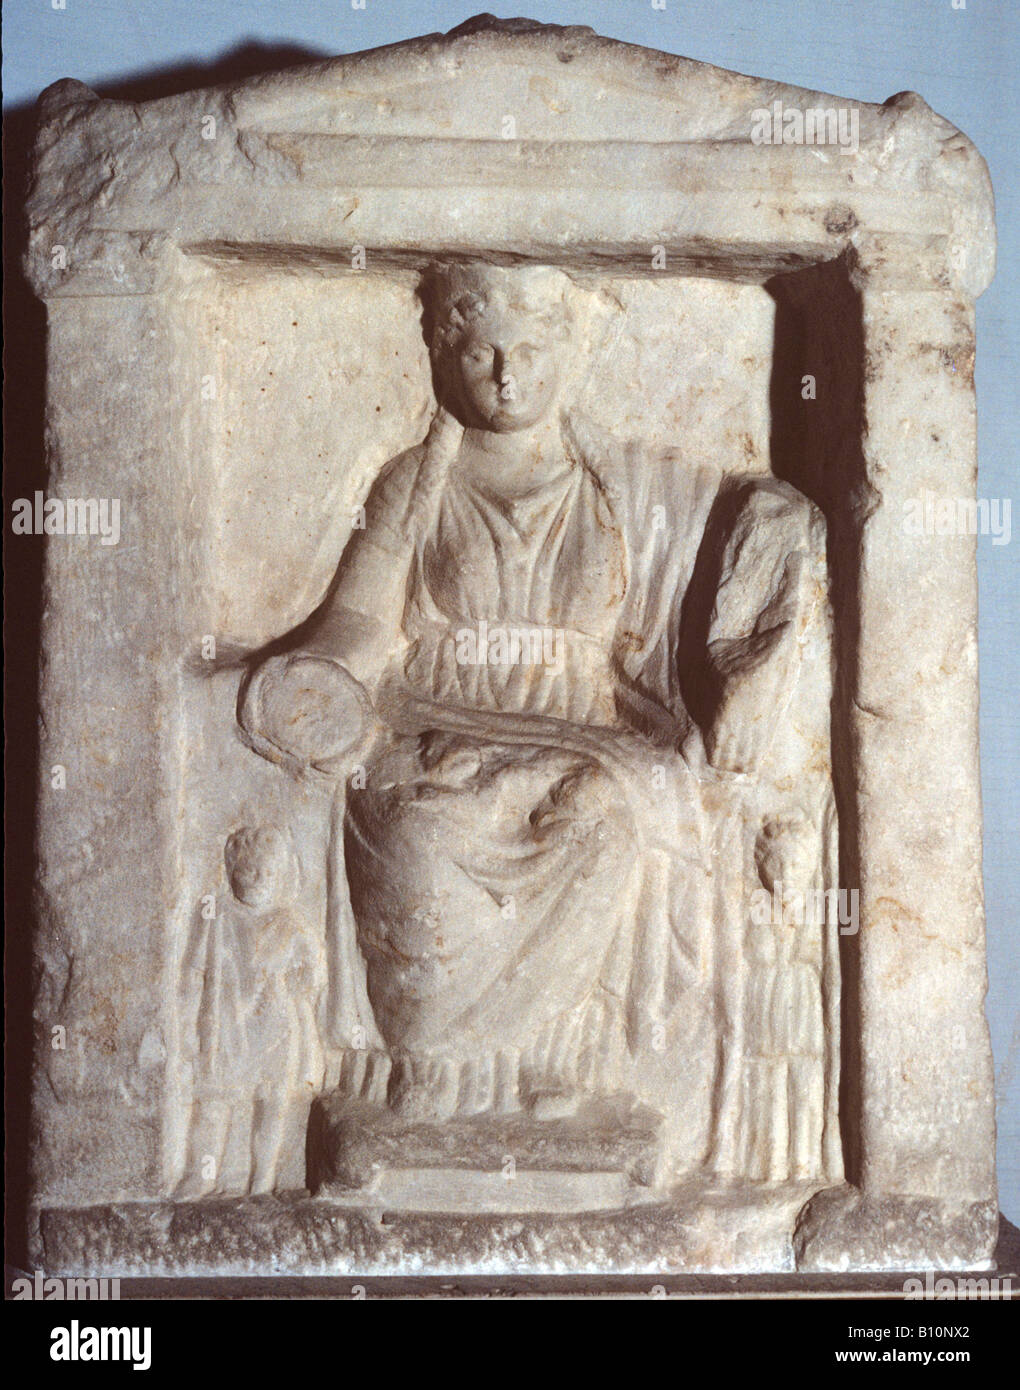 Mère des dieux grecs, le soulagement. 4ème siècle avant J.-C.. Trouvés dans Agora, Grèce Banque D'Images